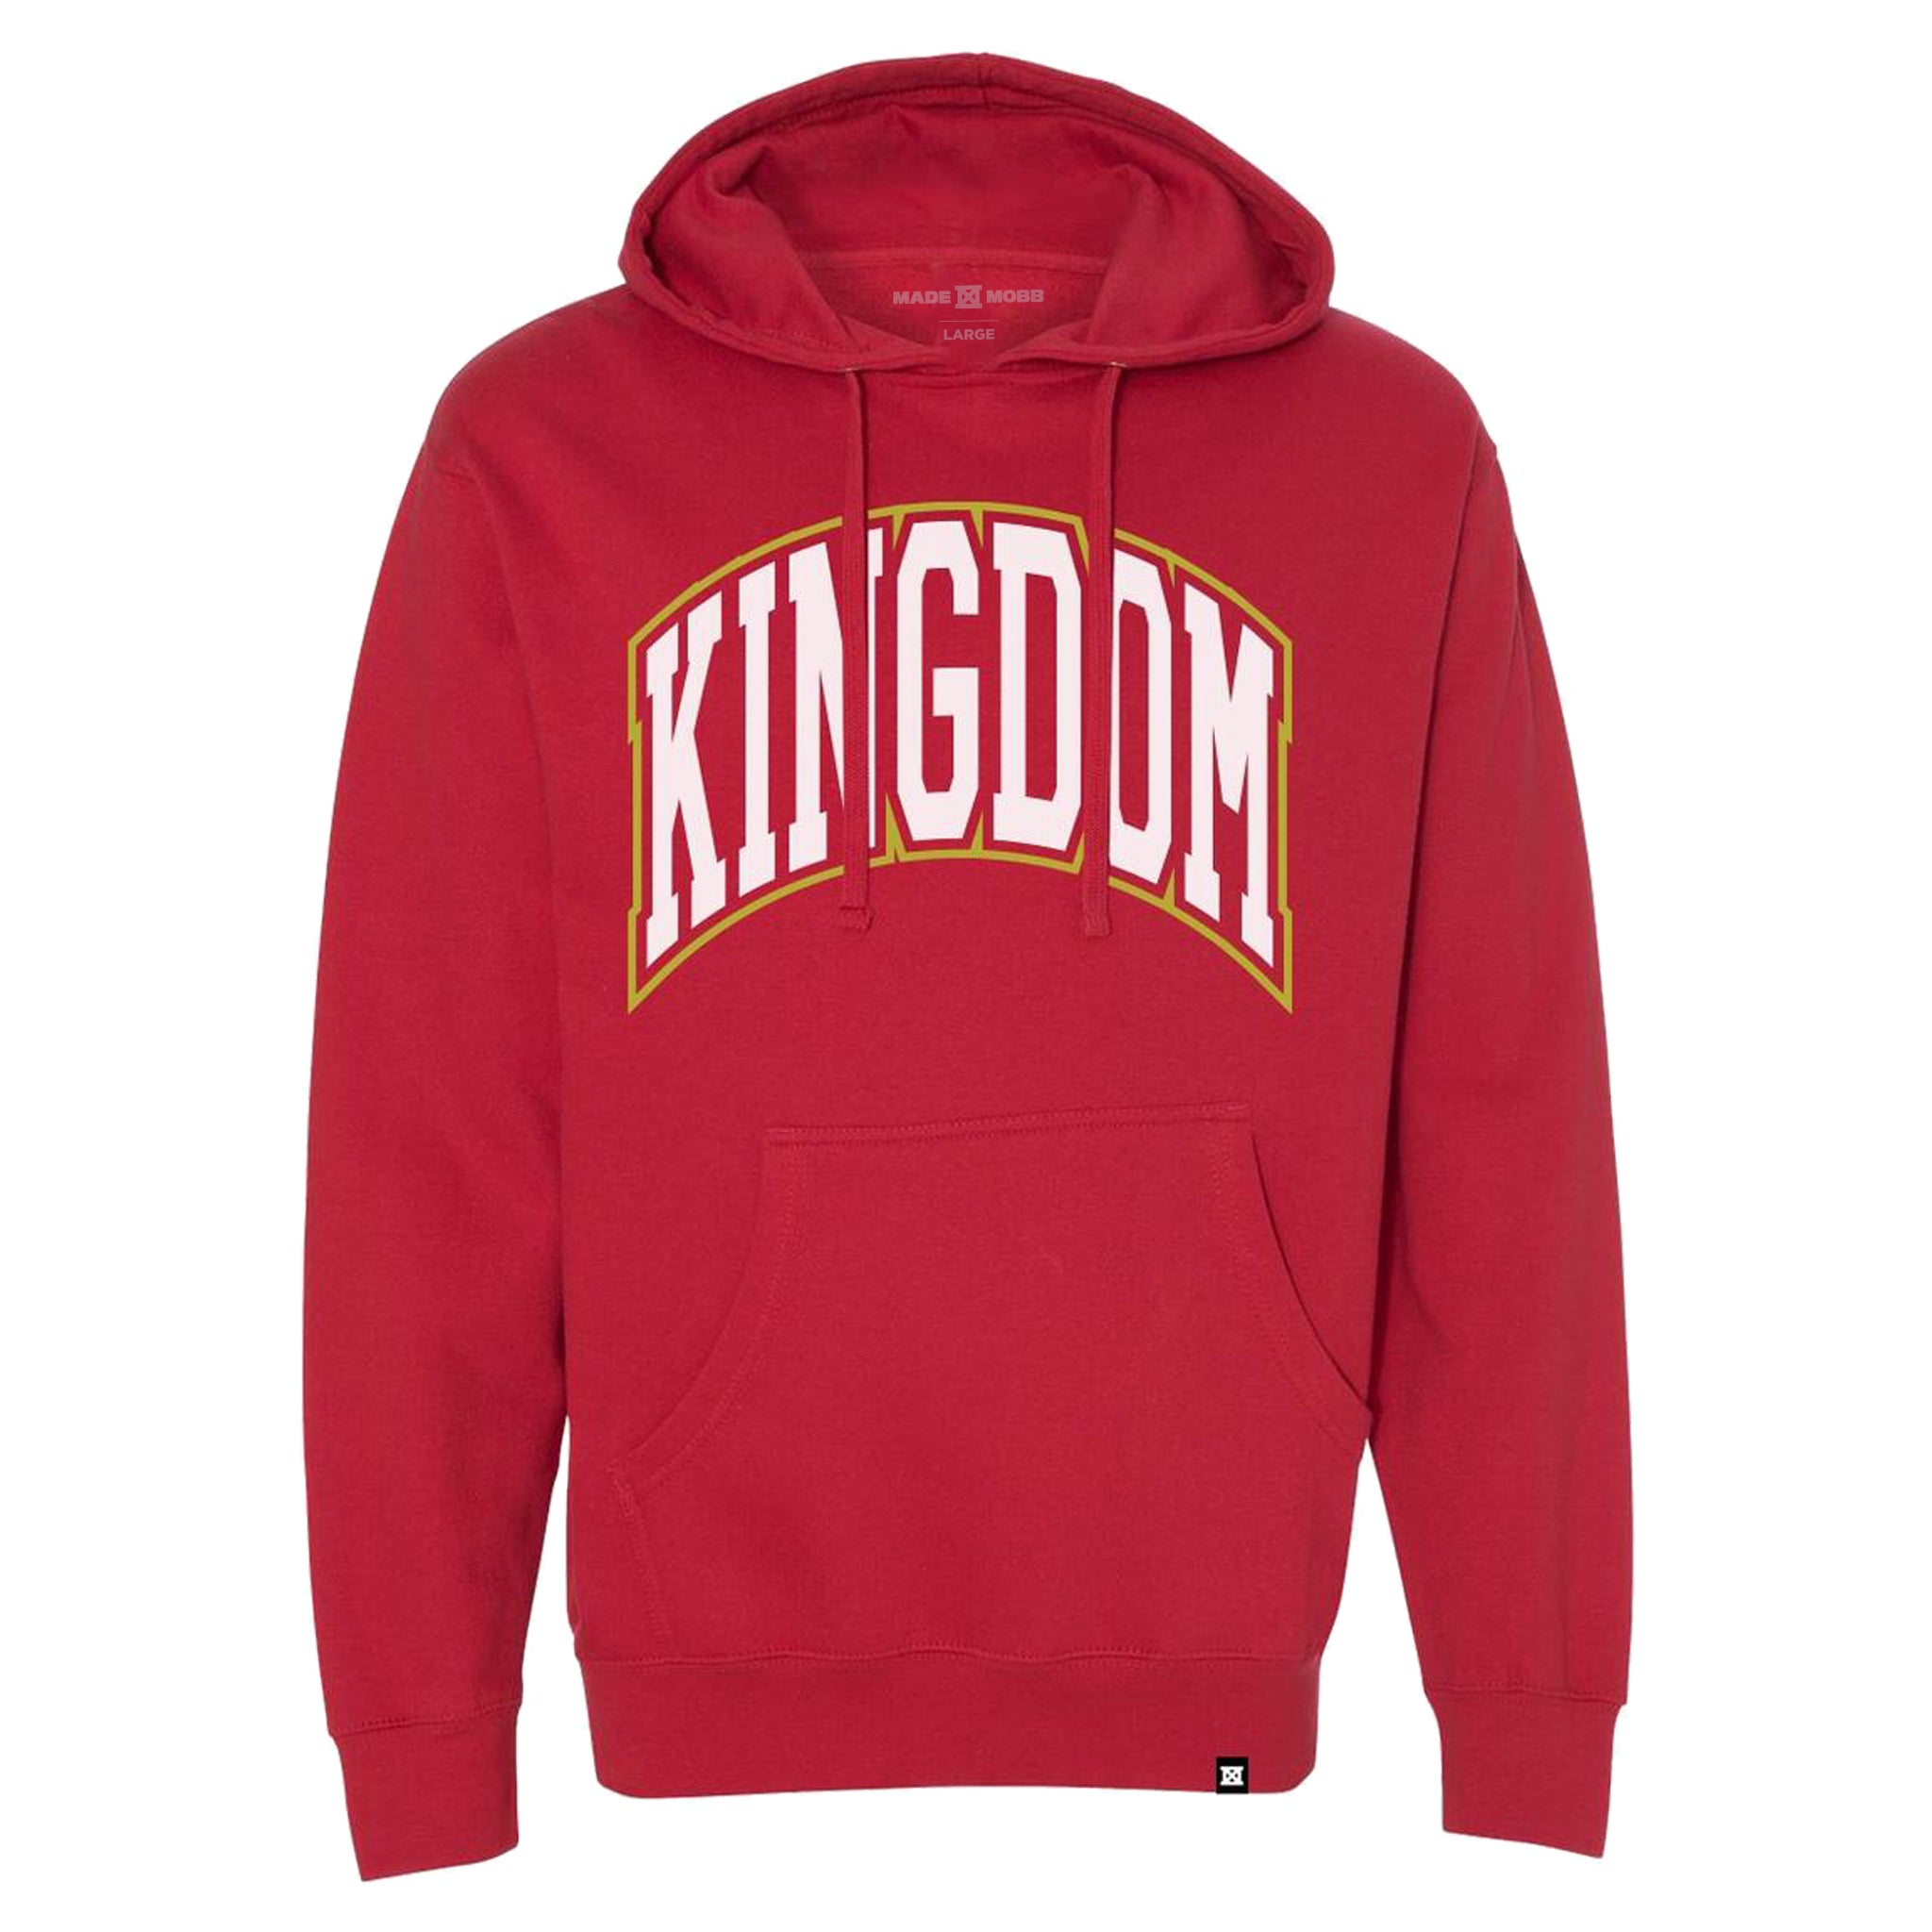 Kingdom Hoodie - Red